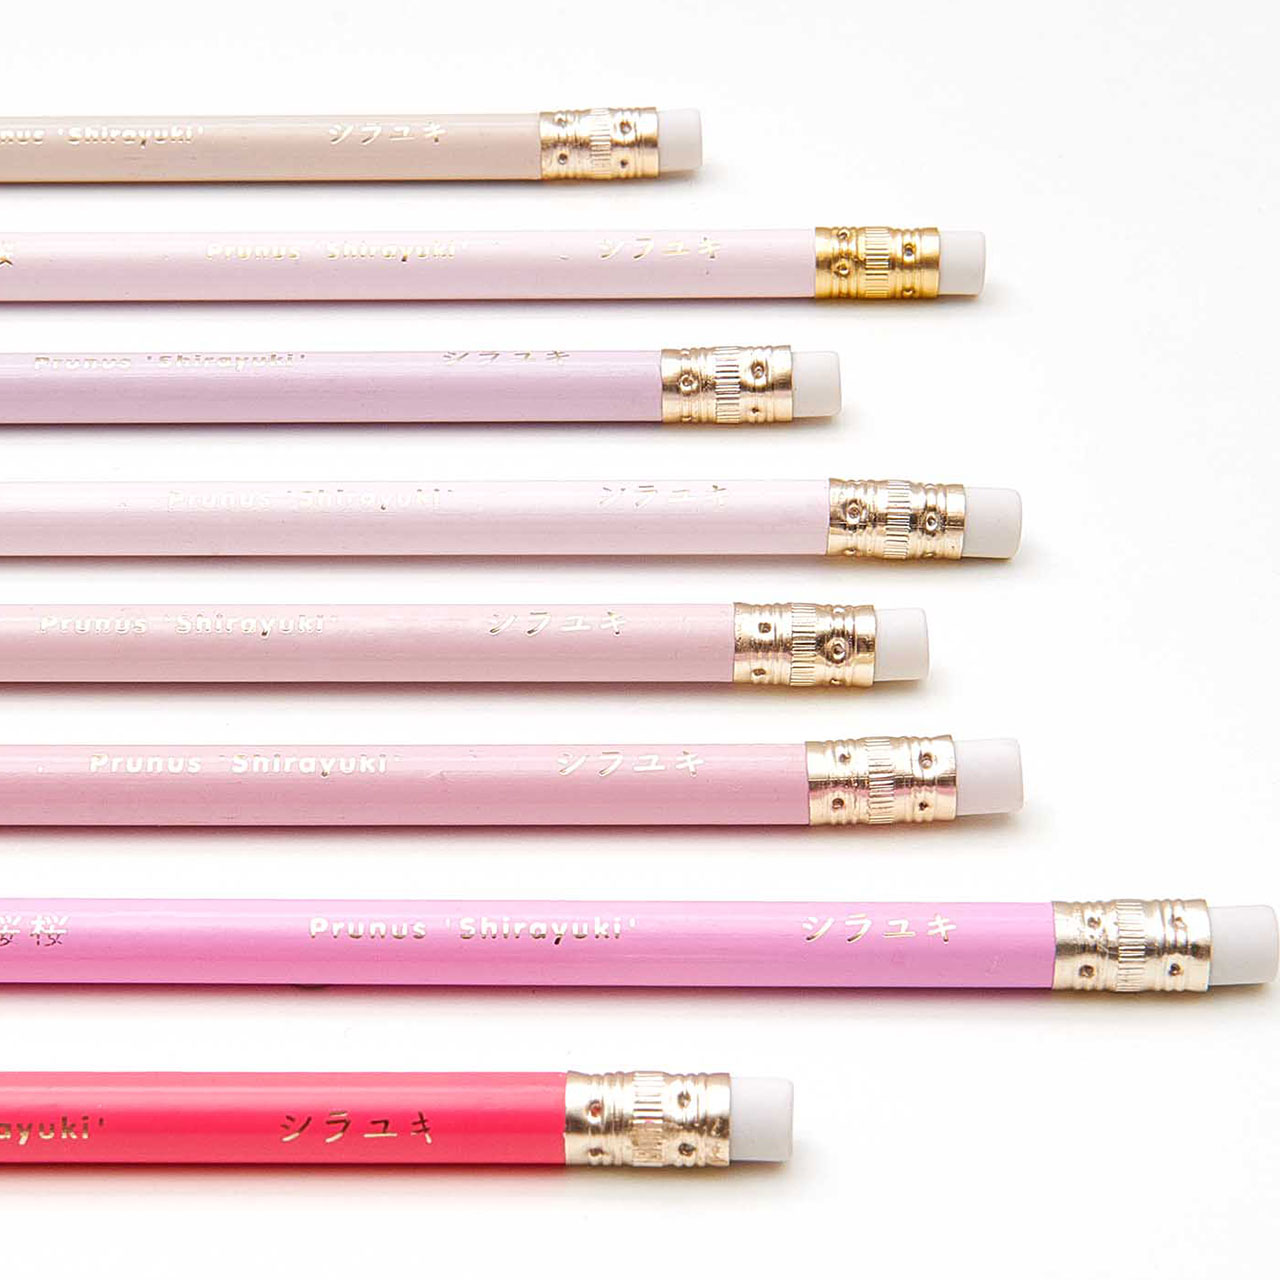 Pencils - Pretty Pink Mix